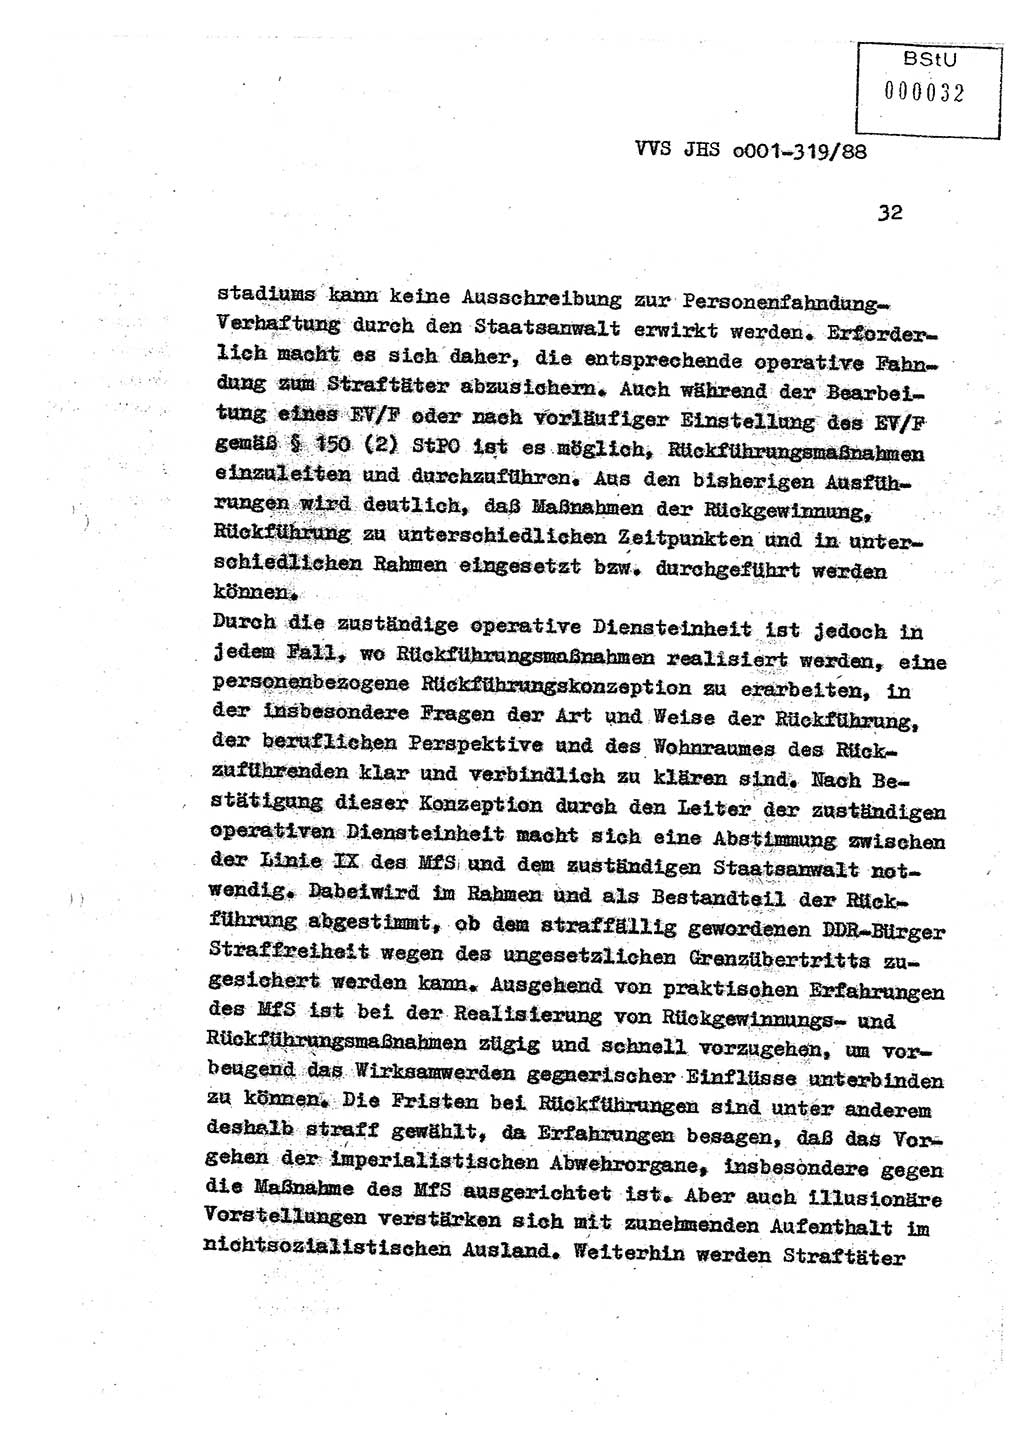 Diplomarbeit Offiziersschüler Holger Zirnstein (HA Ⅸ/9), Ministerium für Staatssicherheit (MfS) [Deutsche Demokratische Republik (DDR)], Juristische Hochschule (JHS), Vertrauliche Verschlußsache (VVS) o001-319/88, Potsdam 1988, Blatt 32 (Dipl.-Arb. MfS DDR JHS VVS o001-319/88 1988, Bl. 32)